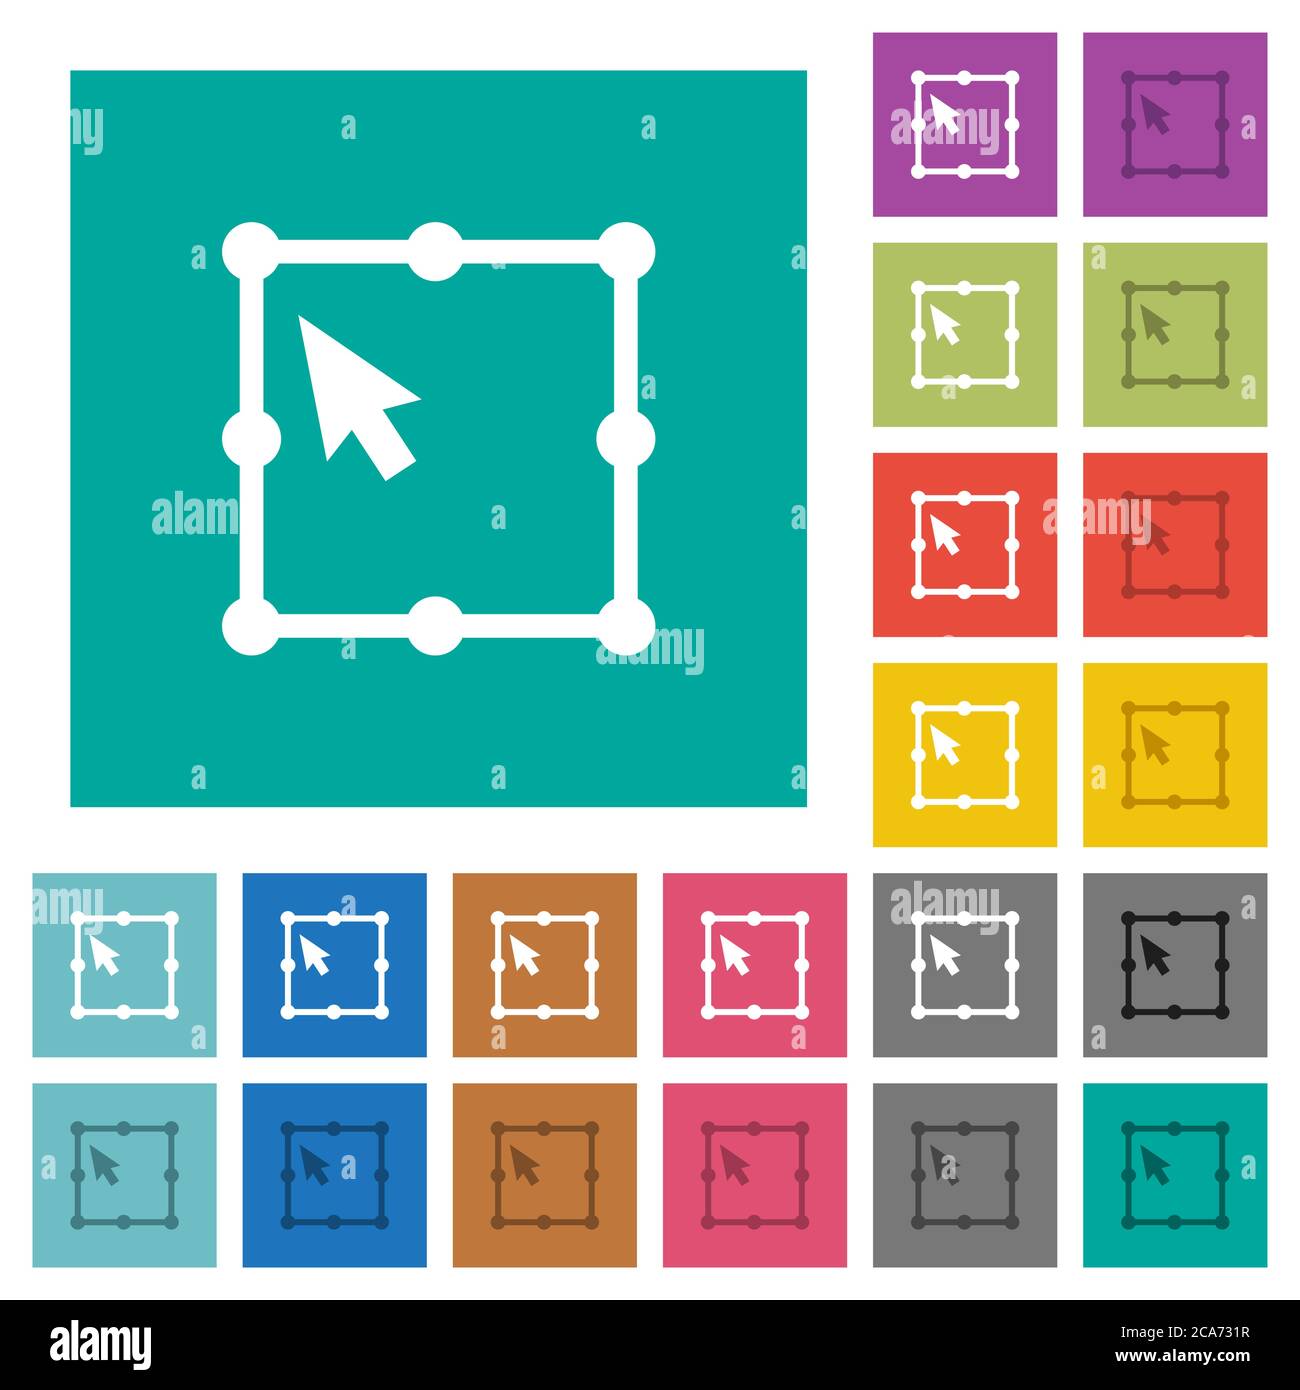 Free Transform oggetto multi colorato icone piatte su sfondi quadrati semplici. Incluse variazioni delle icone bianche e più scure per il passaggio del mouse o gli effetti attivi. Illustrazione Vettoriale